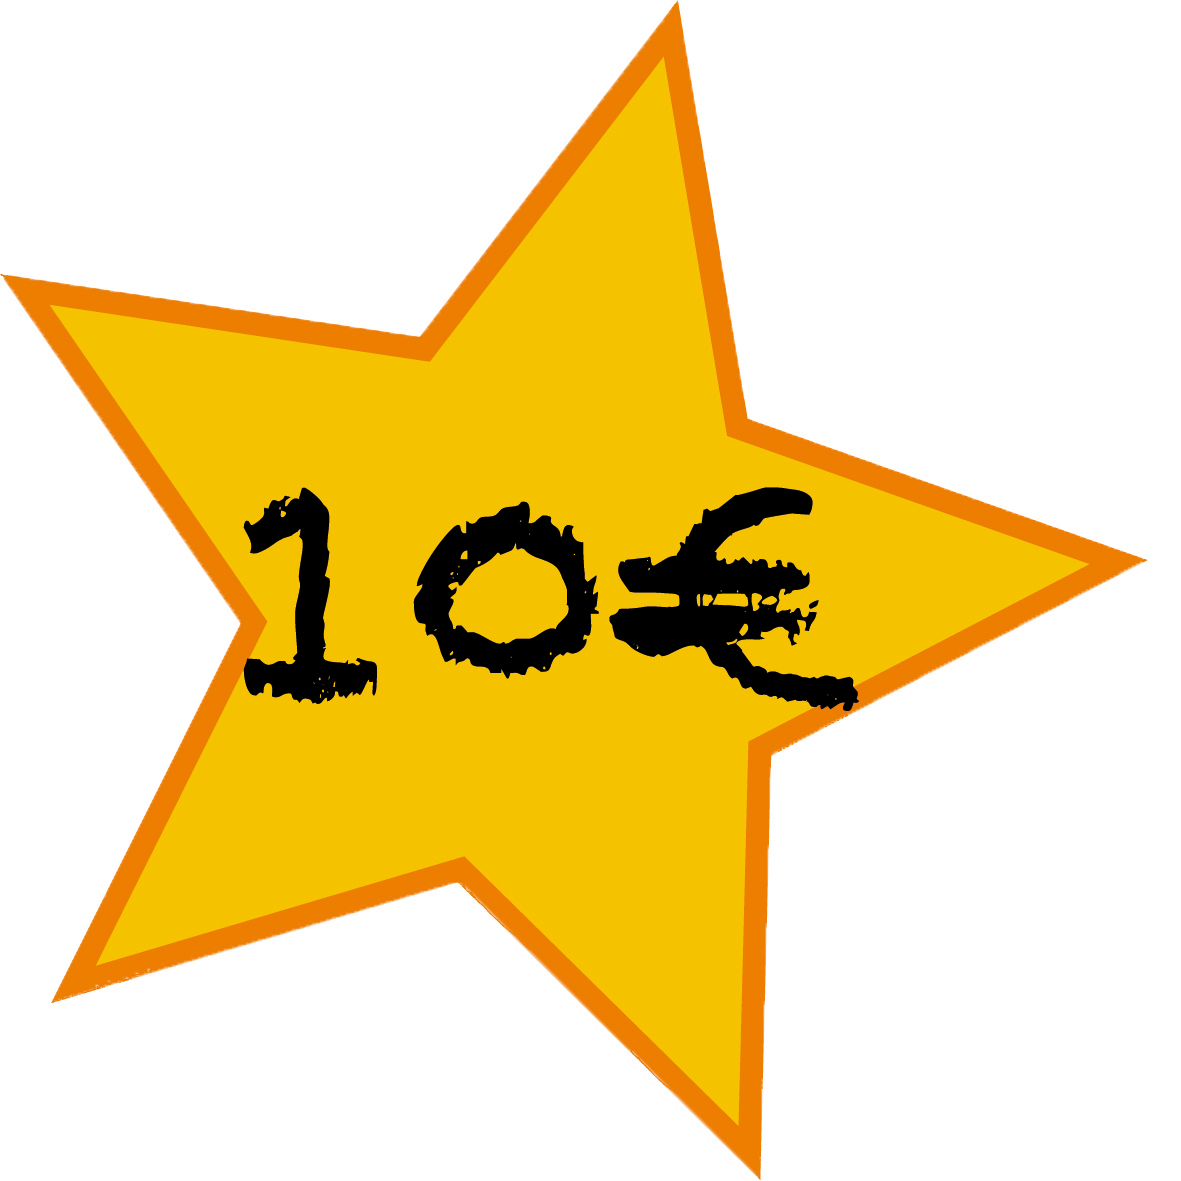 10 €